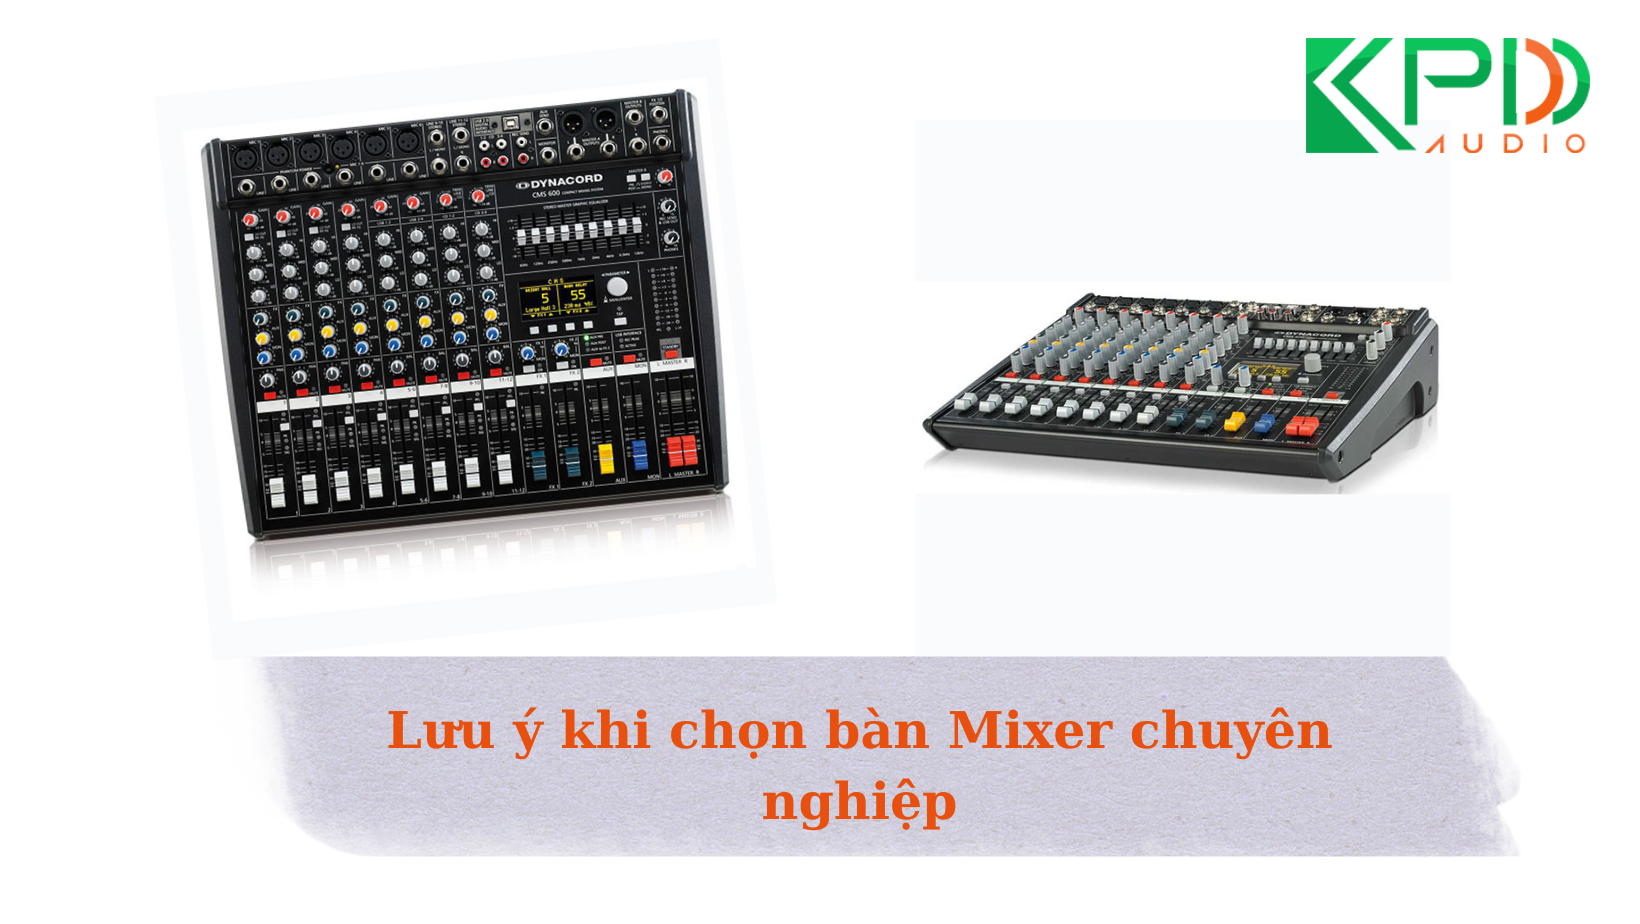  chon-ban-mixer-chuyen-nghiep